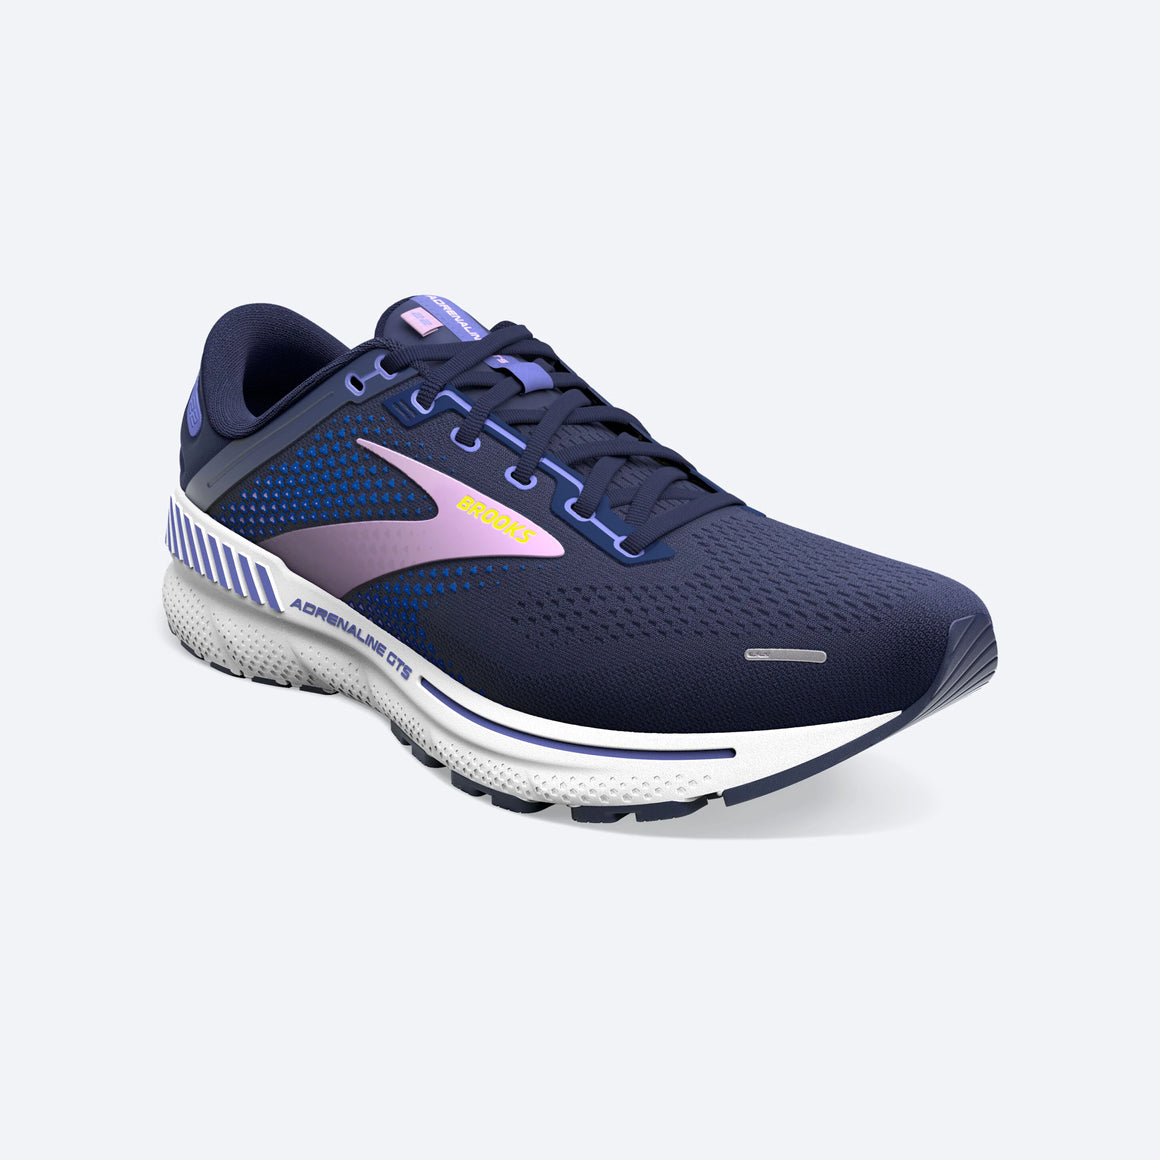 Brooks Women's Adrenaline GTS 22 Running Shoe - Peacoat/Blue Iris/Rhapsody 1203531B514